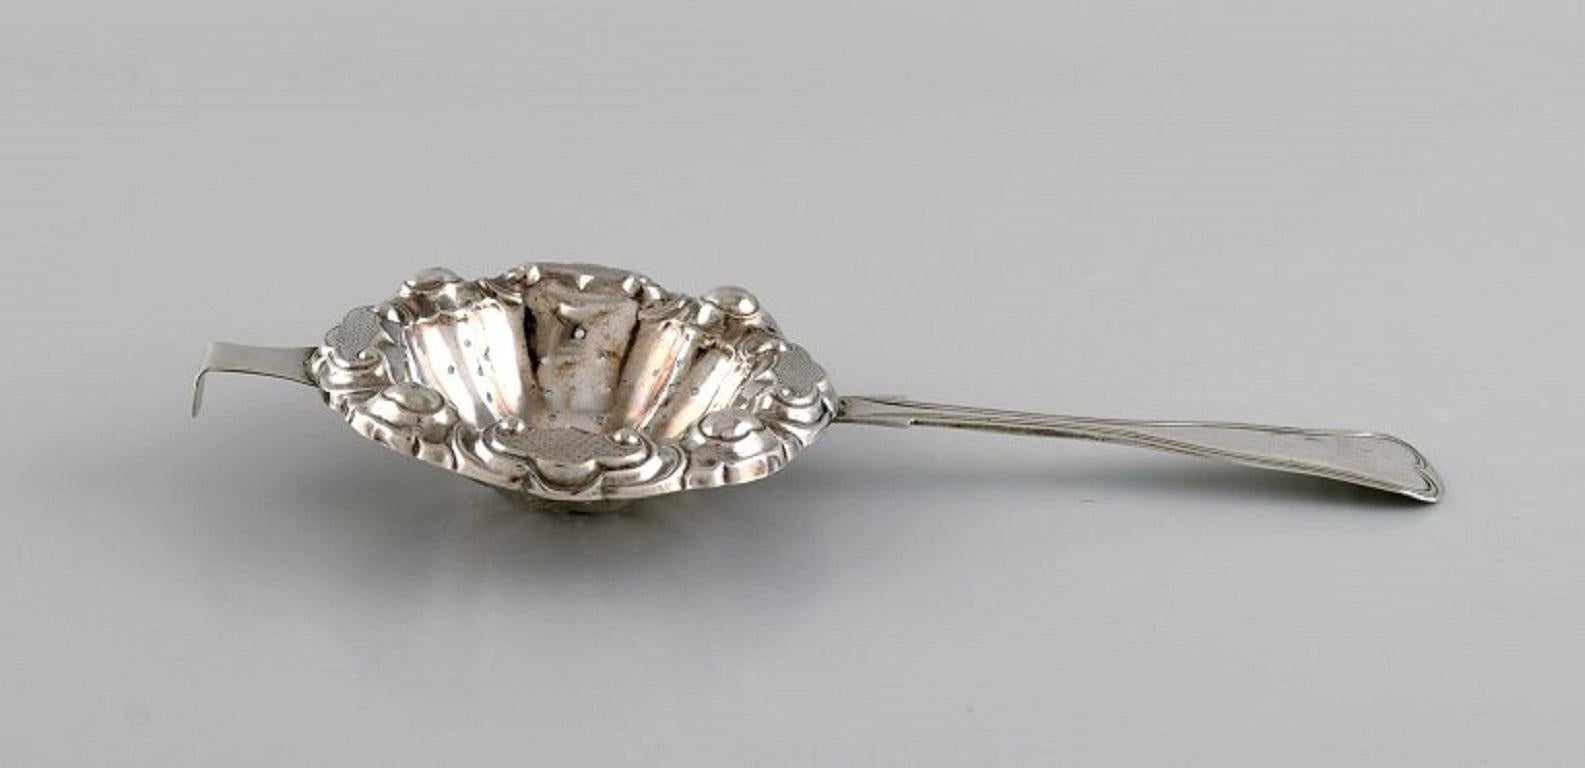 antique tea strainer spoon